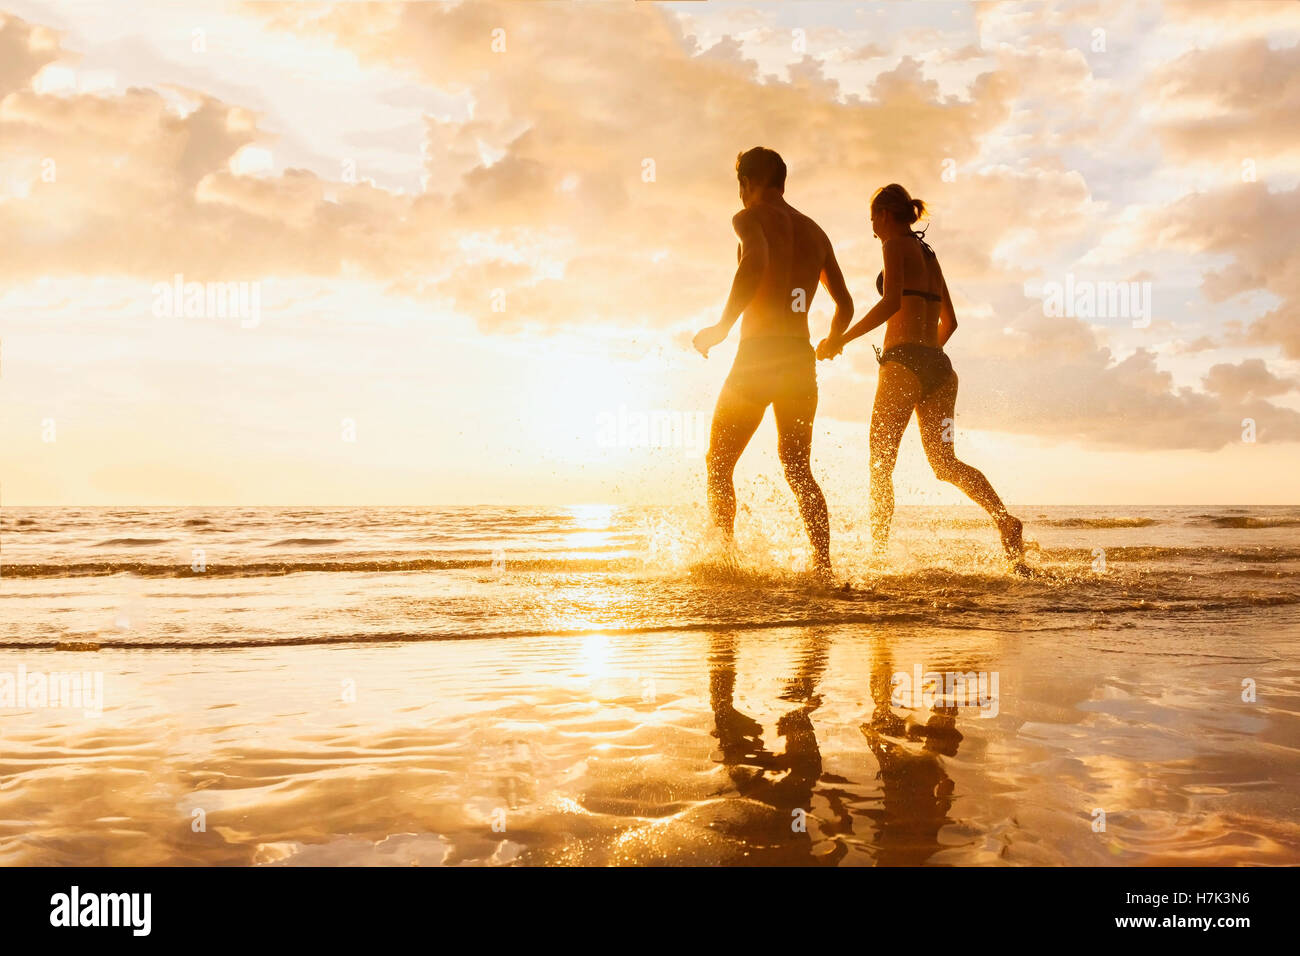 Felice allegro giovane divertendosi in esecuzione al mare insieme e fare schizzi di acqua su una spiaggia tropicale al tramonto luna di miele Foto Stock